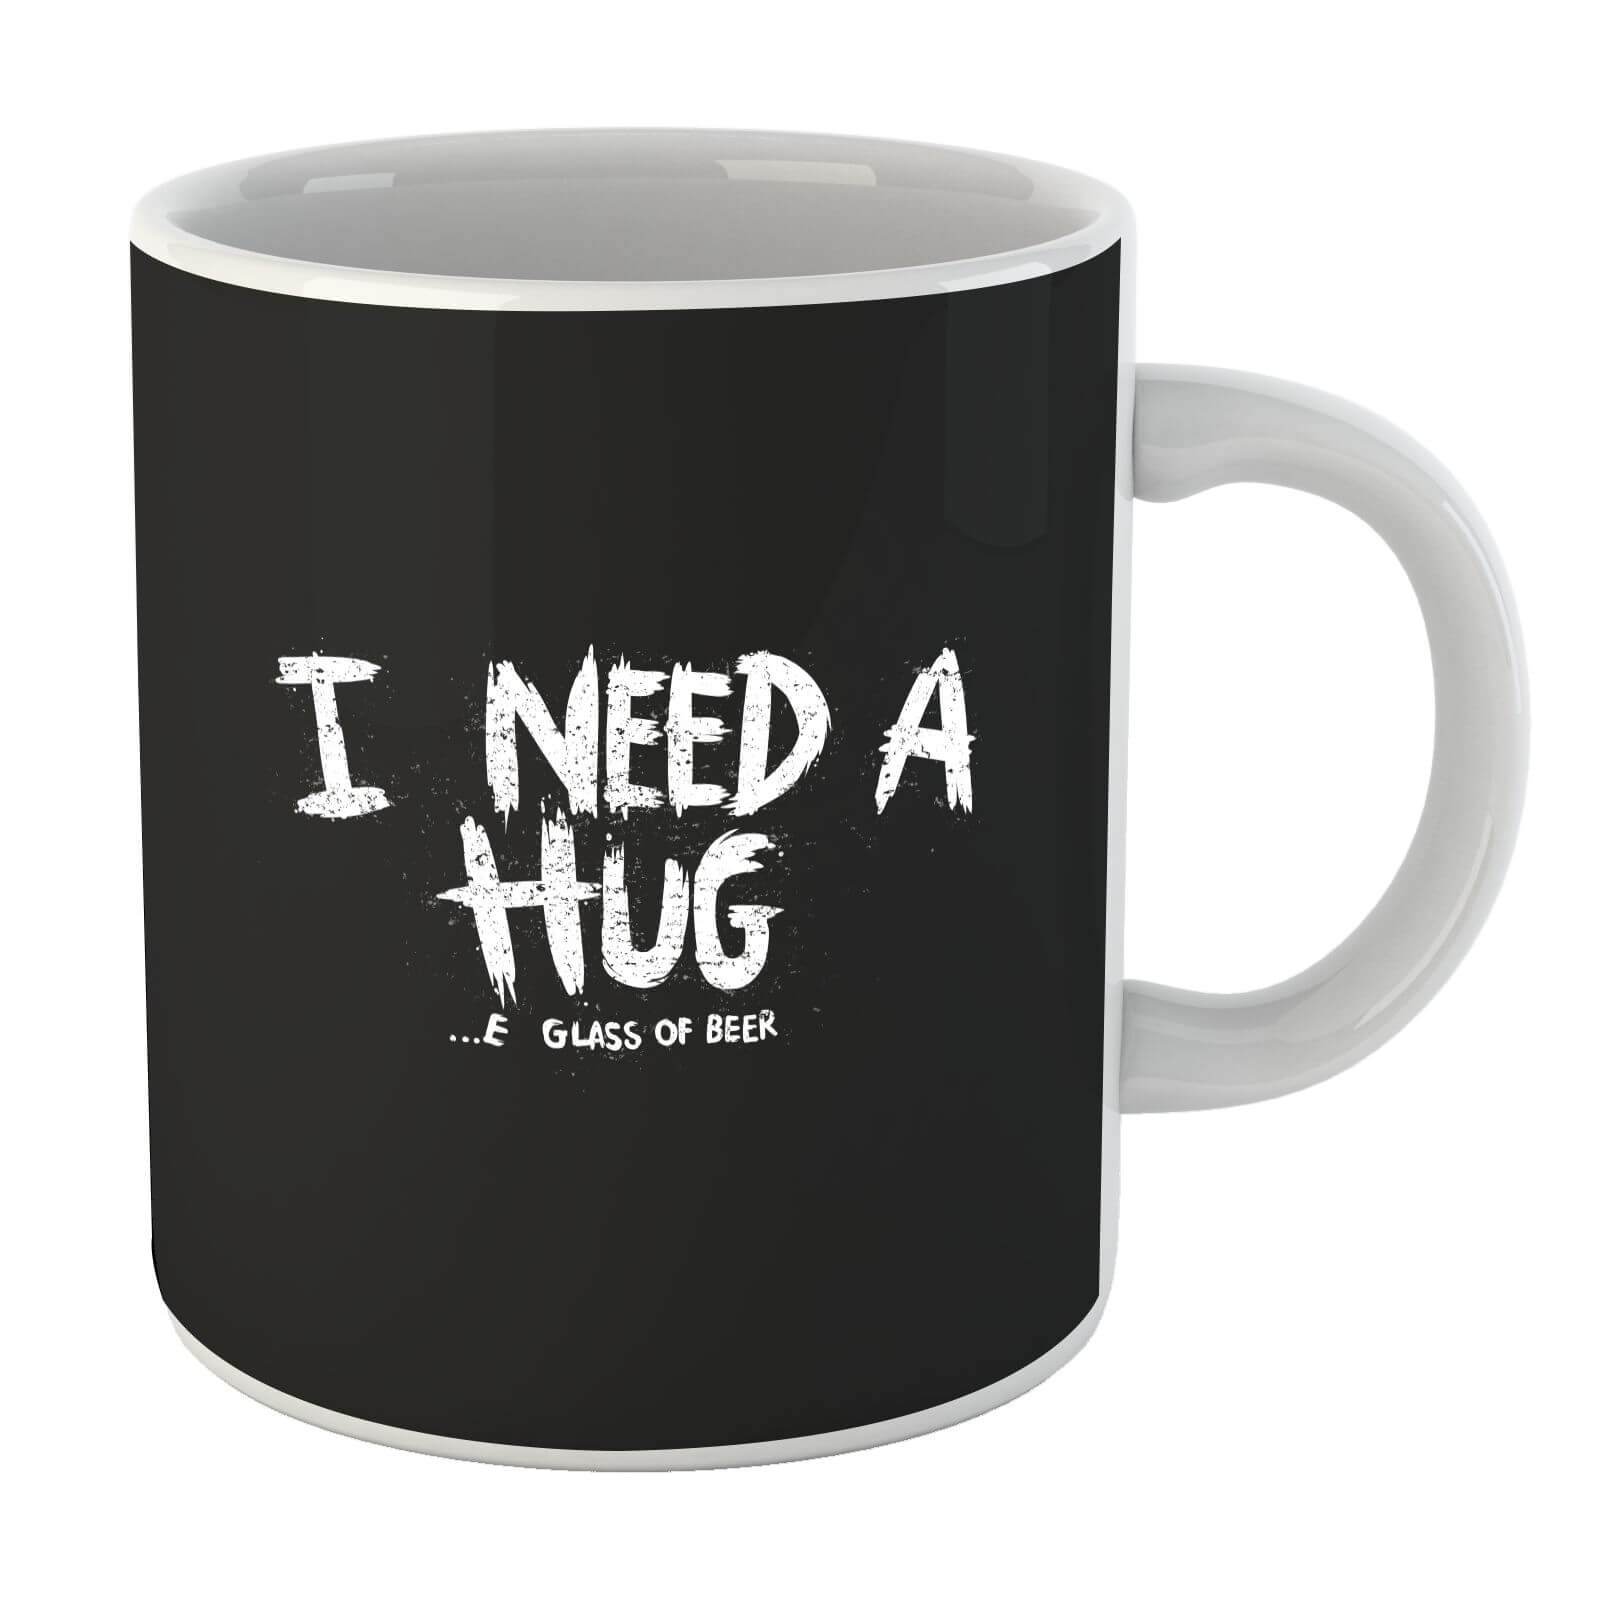 I Want A Hug Mug